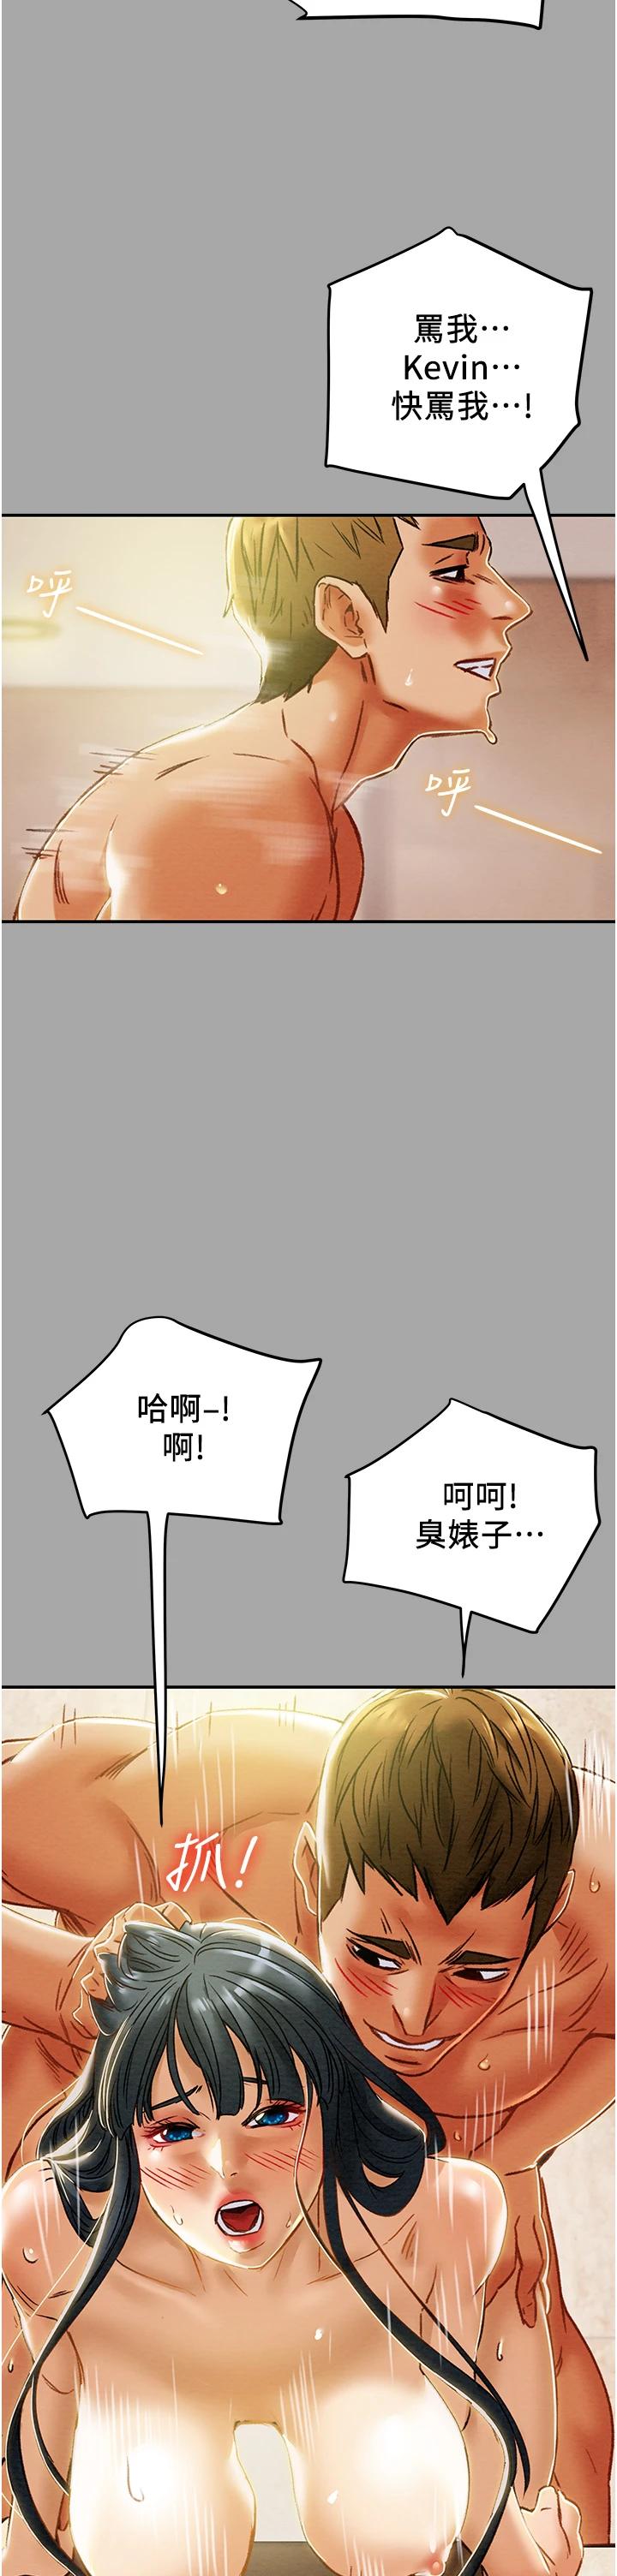 韩国污漫画 純情女攻略計劃 第48话伸向俱乐部的黑影 48